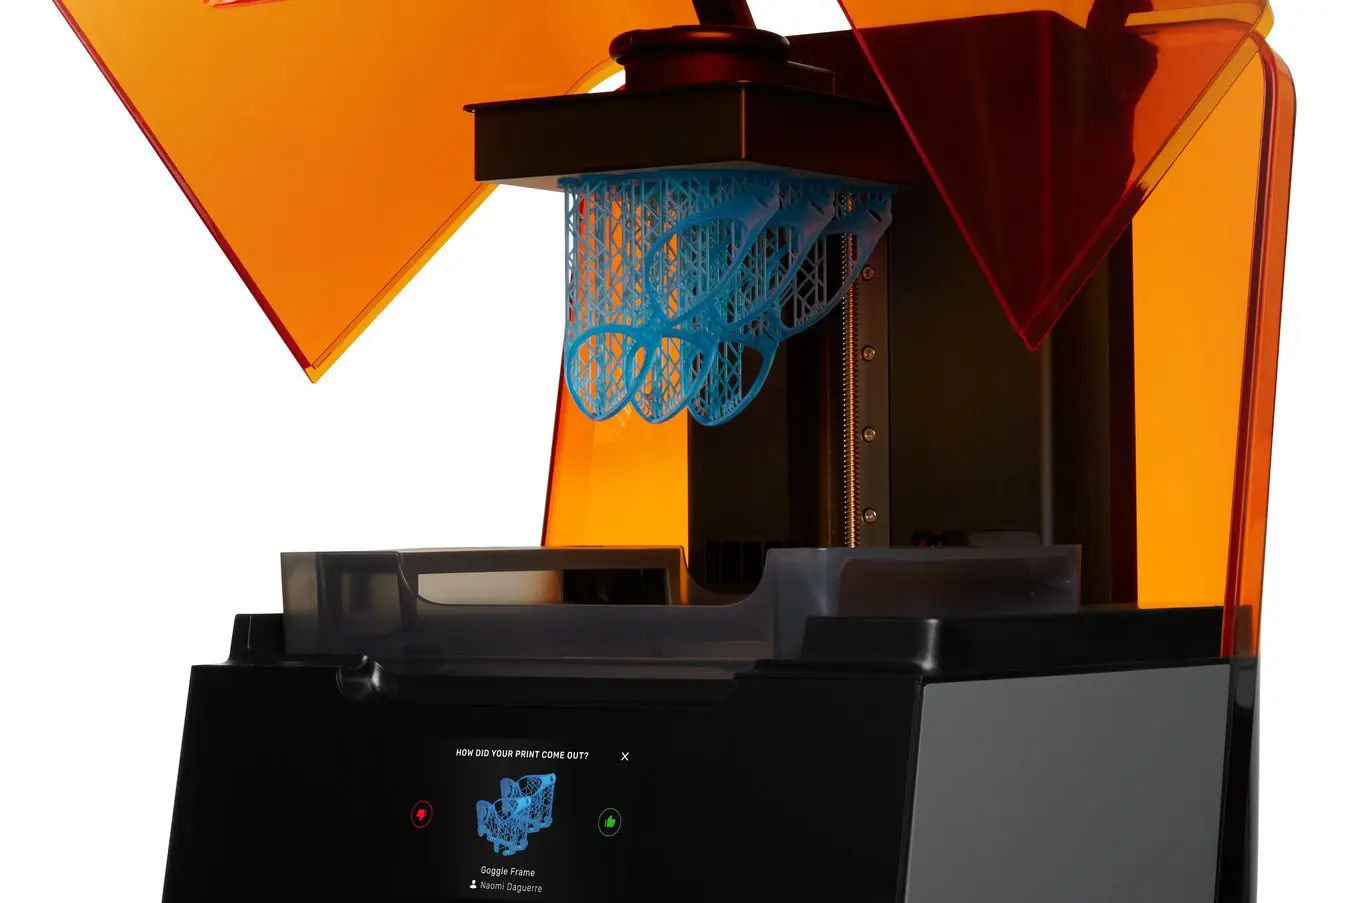 Las impresoras 3D SLA de alta resolución de Formlabs tienen un alto grado de resolución vertical en el eje Z y ofrecen un tamaño mínimo del detalle bajo en el plano XY, lo que permite que reproduzcan detalles delicados.